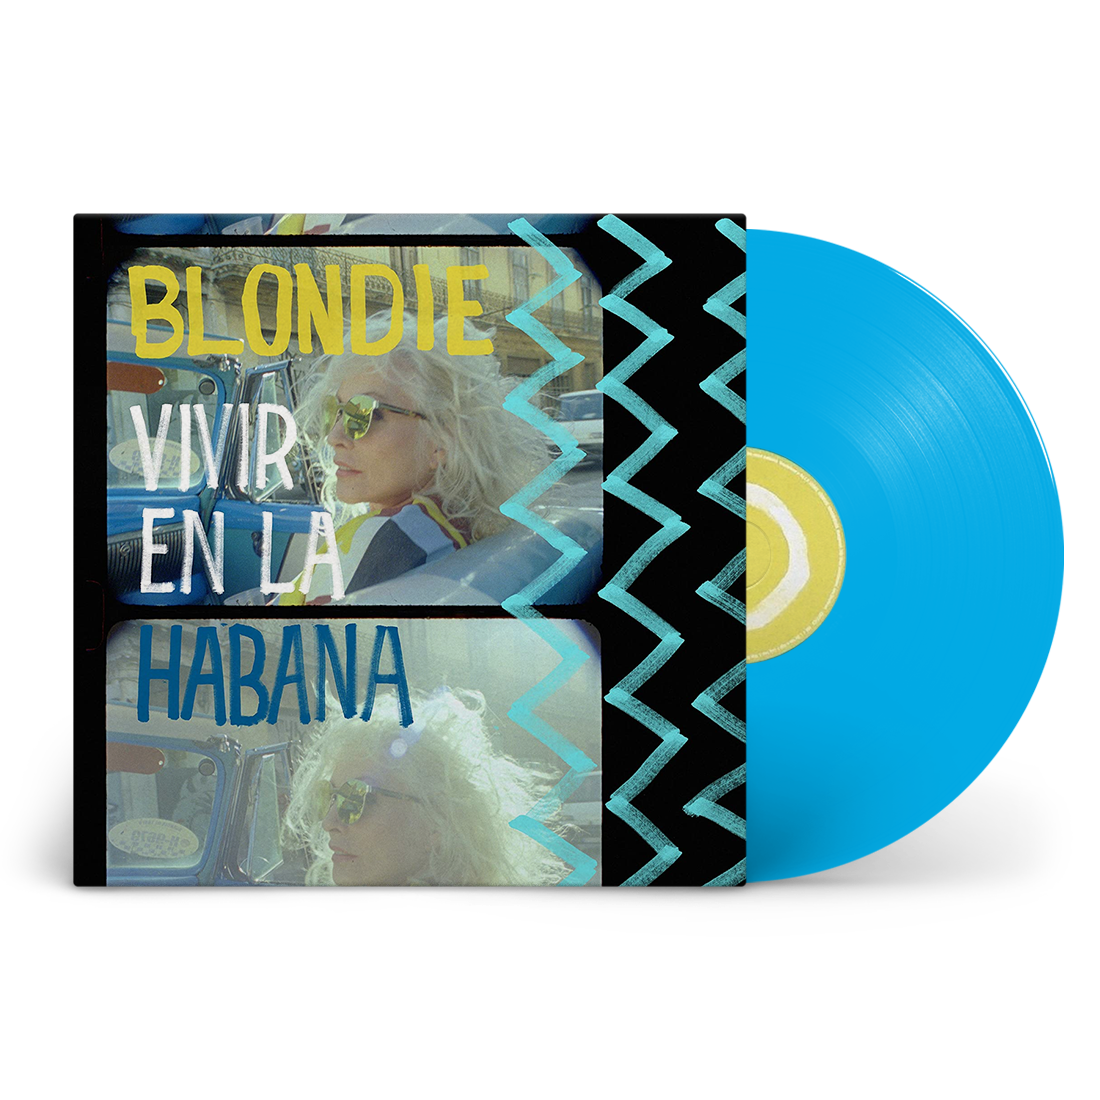 Buy Blondie - Vivir En La Habana (Indie Exclusive, Limited Edition Light Blue Vinyl)